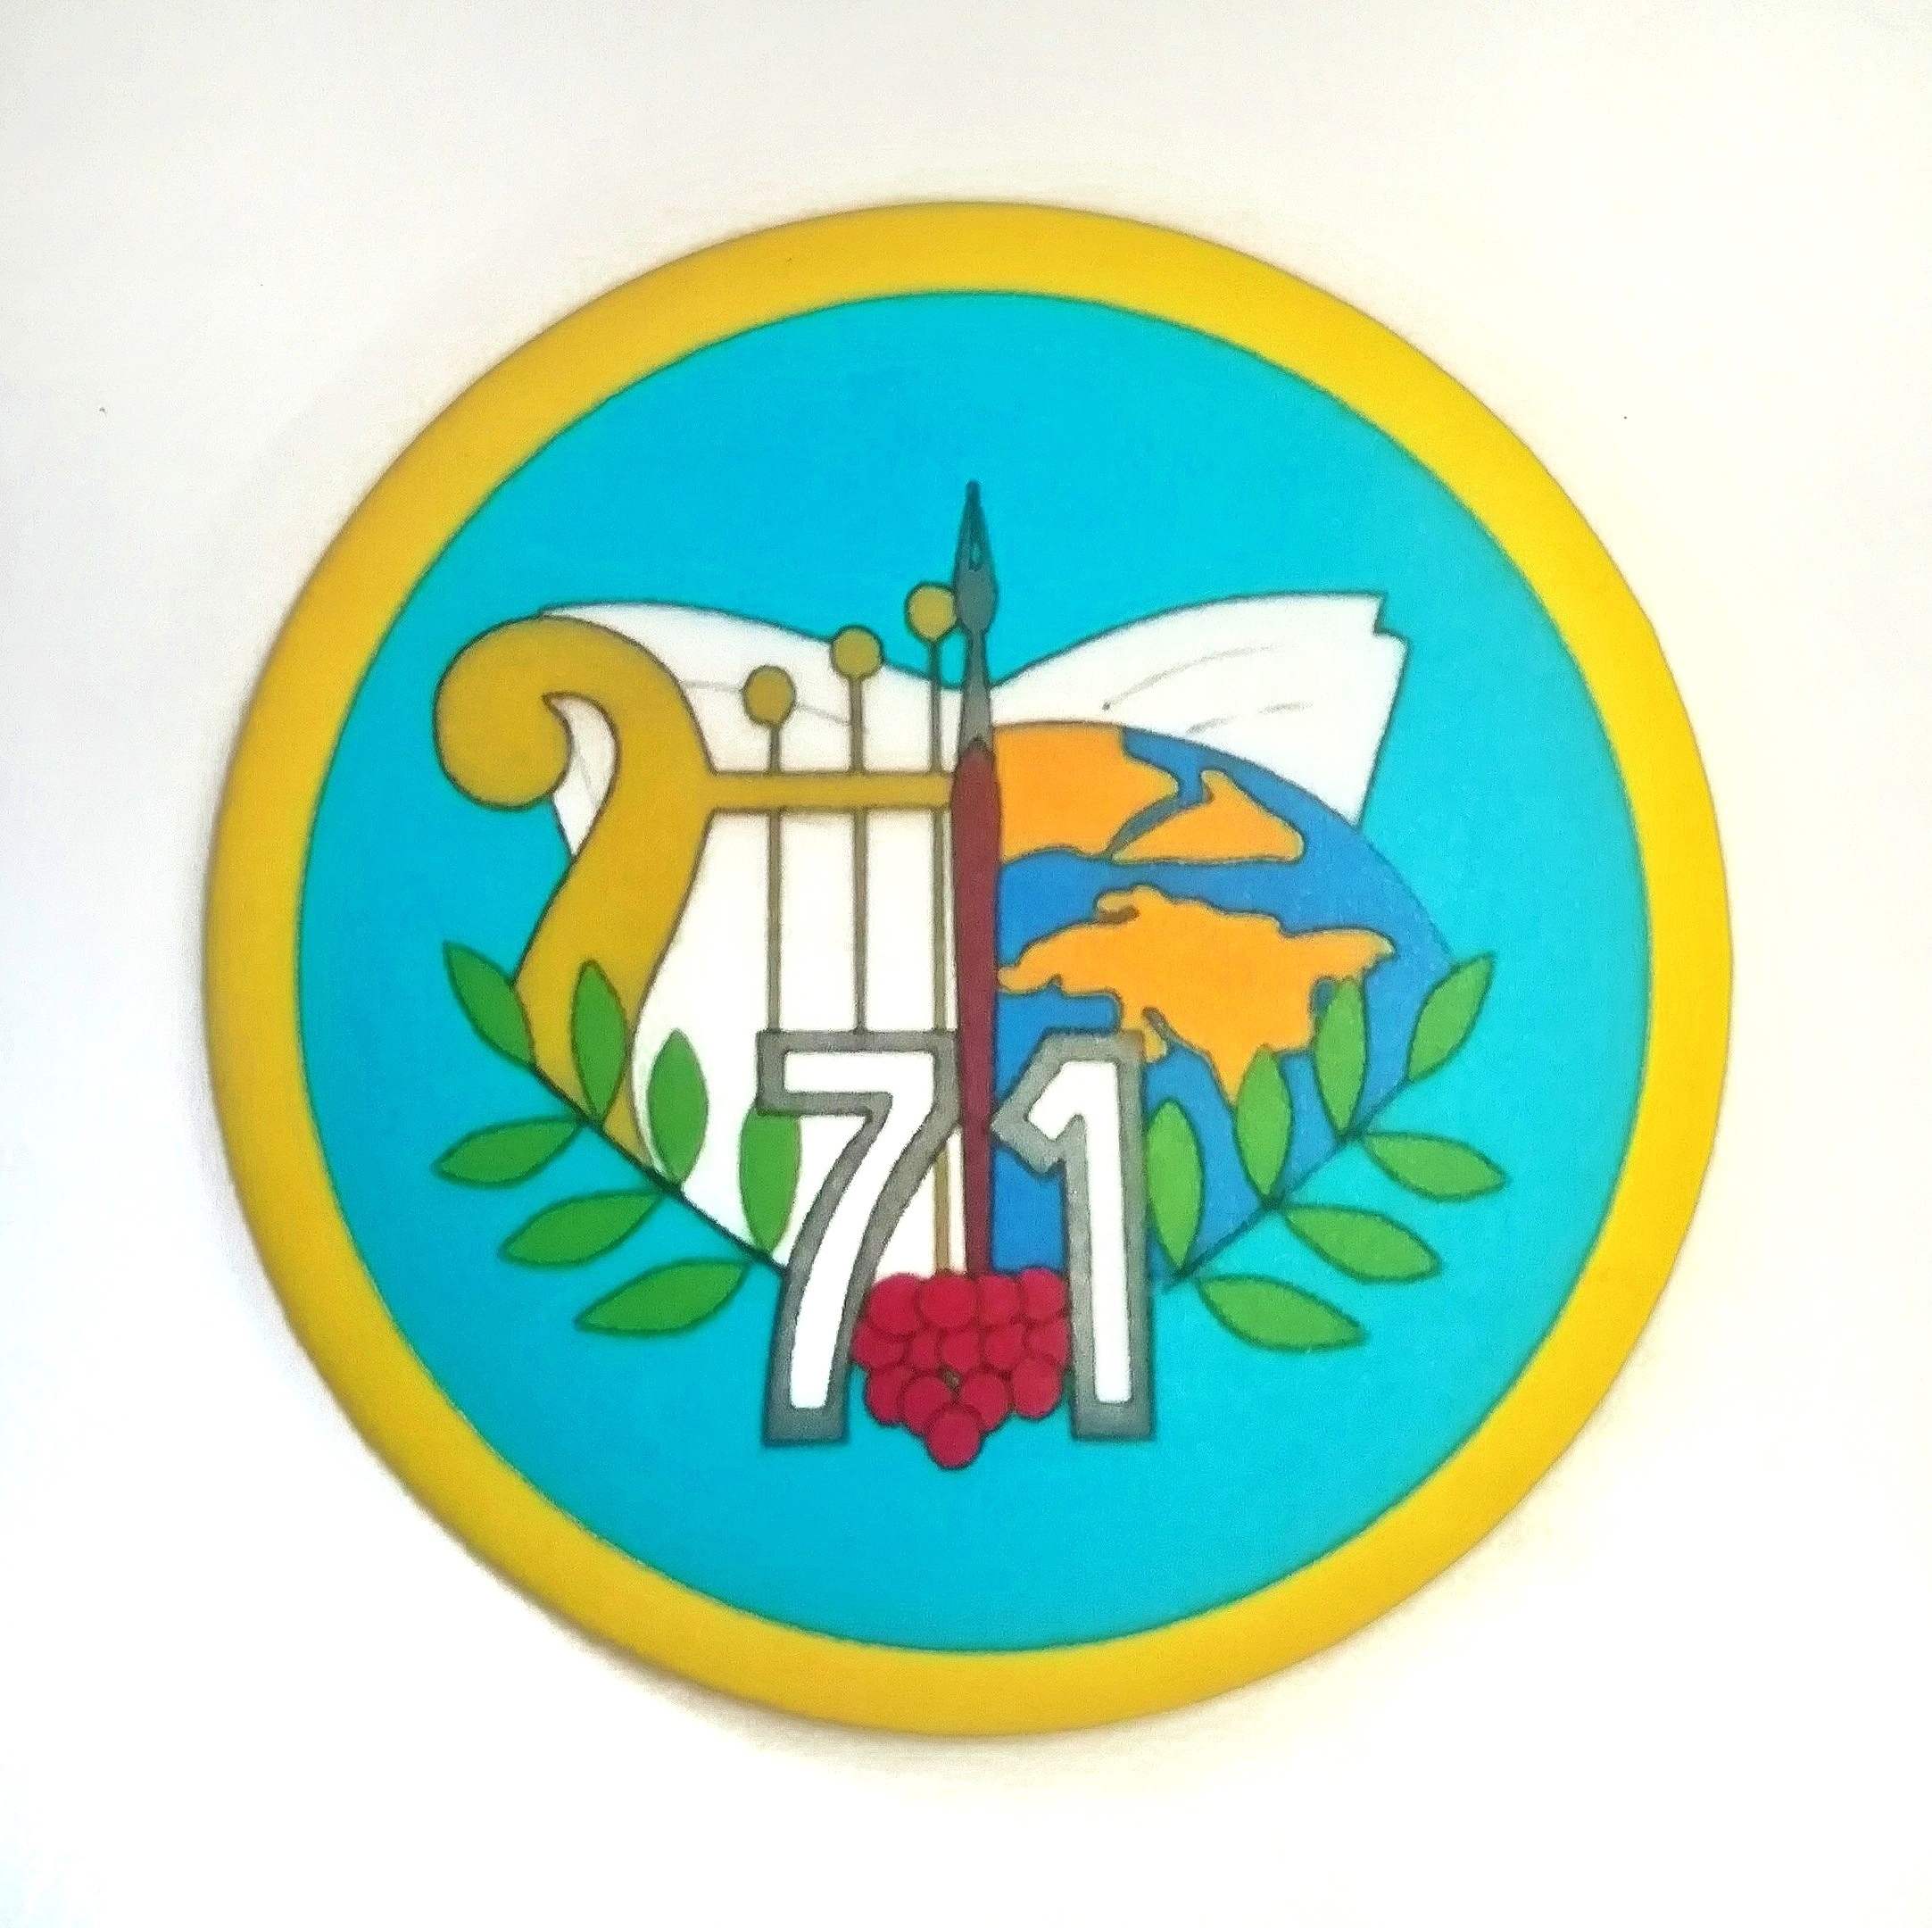 герб школы